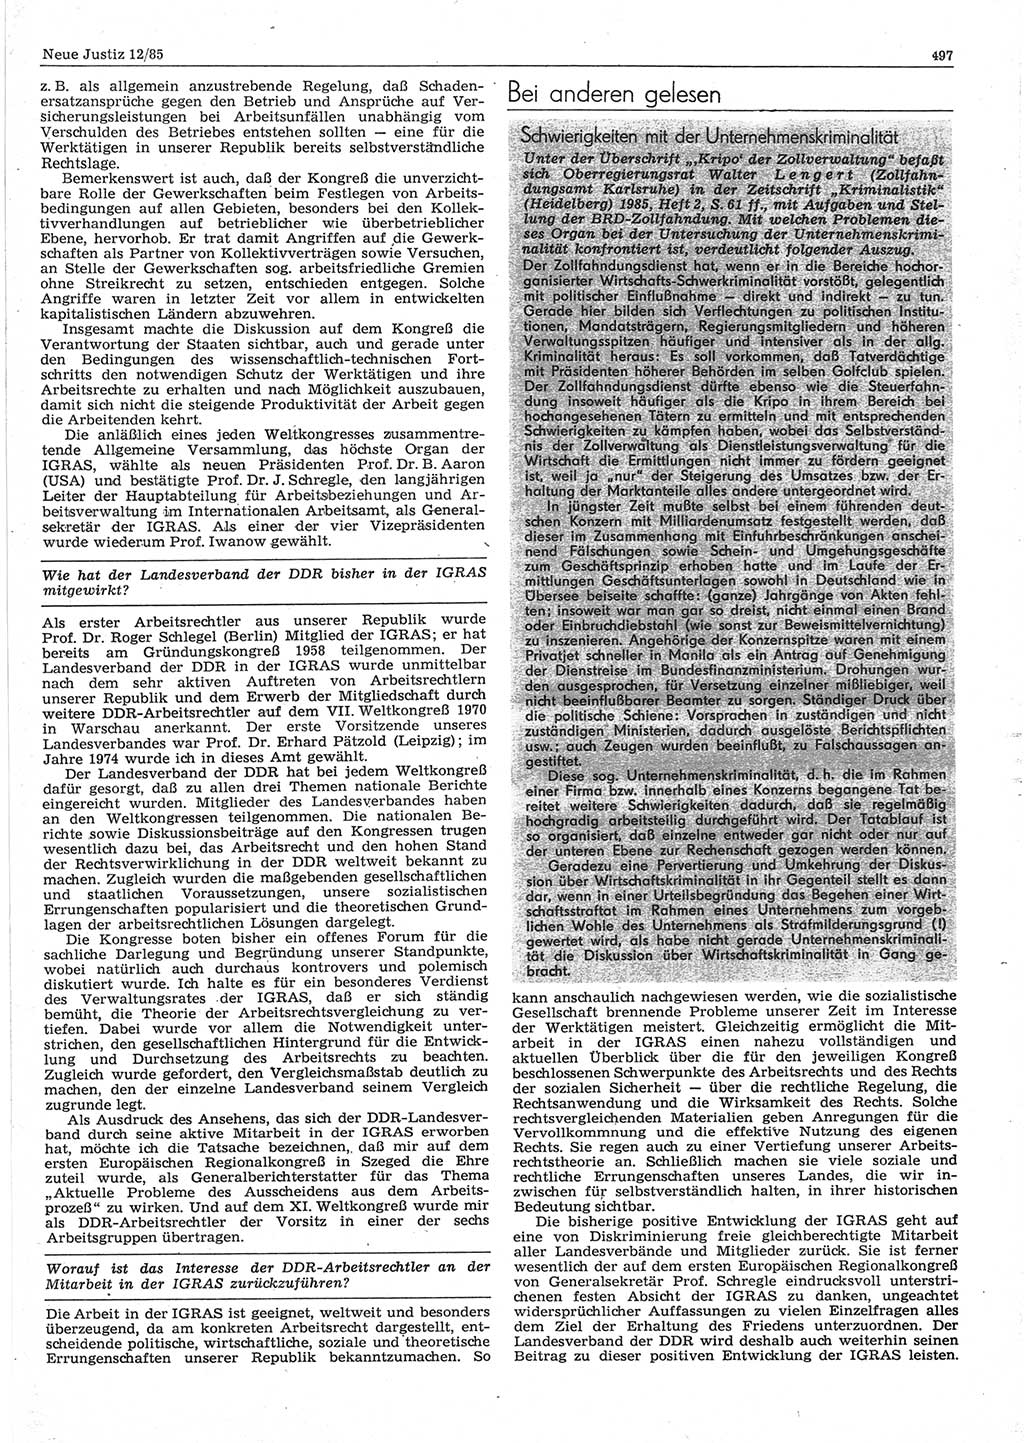 Neue Justiz (NJ), Zeitschrift für sozialistisches Recht und Gesetzlichkeit [Deutsche Demokratische Republik (DDR)], 39. Jahrgang 1985, Seite 497 (NJ DDR 1985, S. 497)